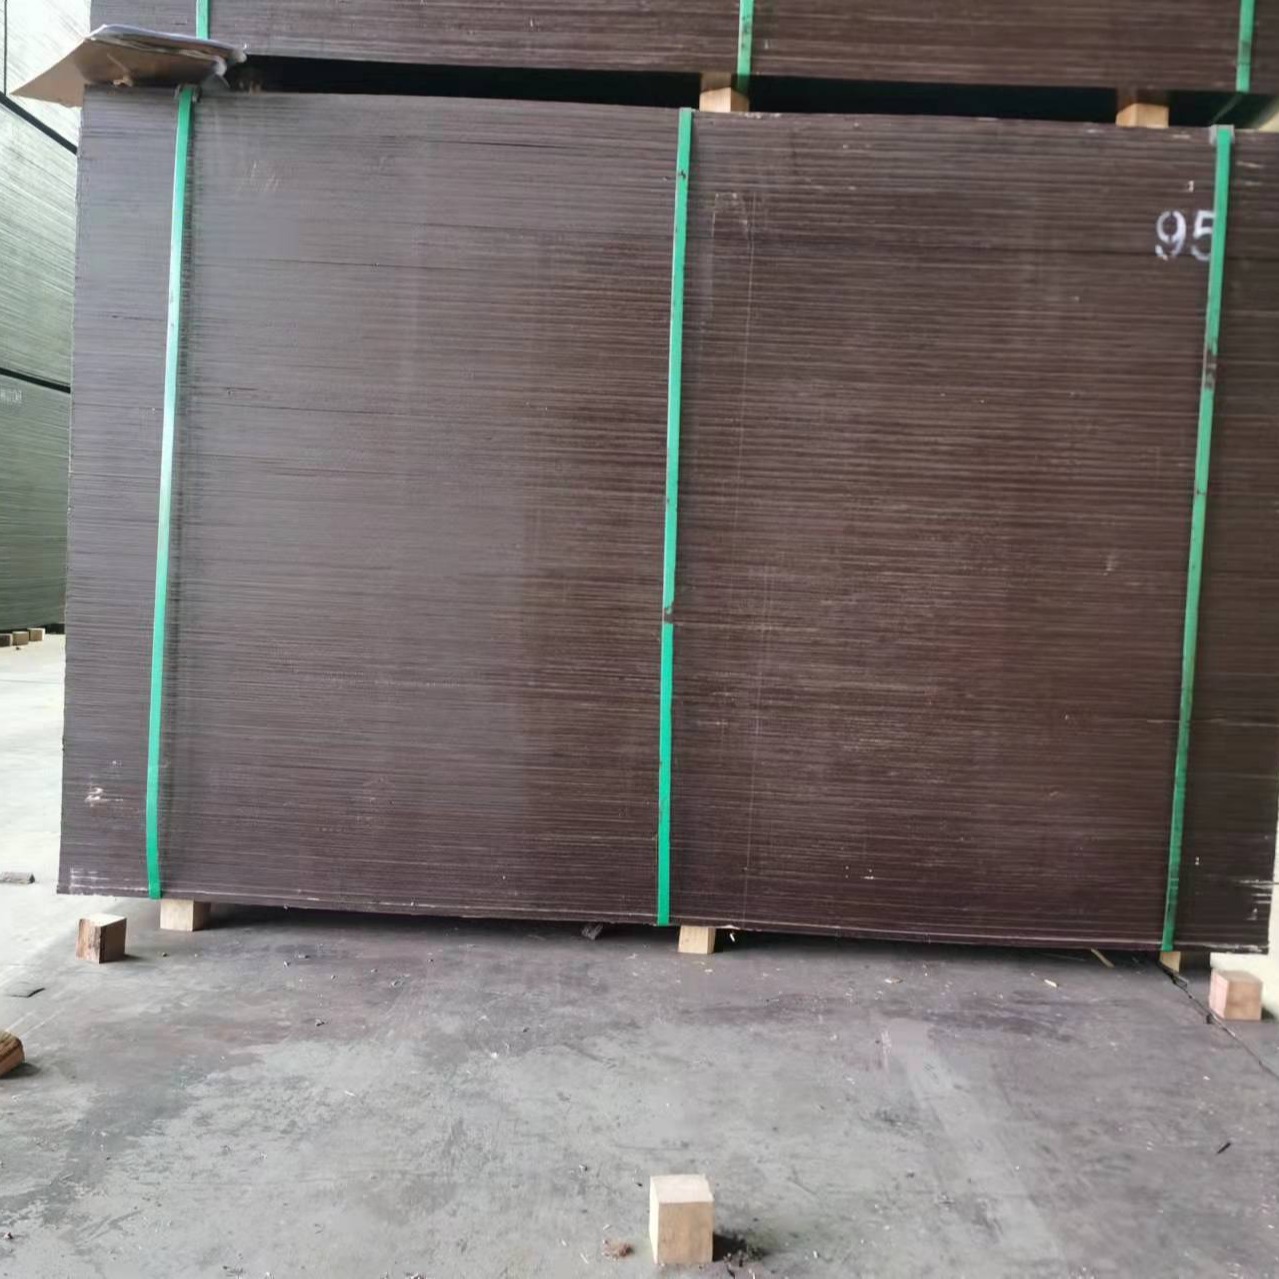 六安市叶集区金祥木业厂家  大量  批发建筑模板  覆膜板  小红板  钢化膜  优质全整芯板  可定制图片